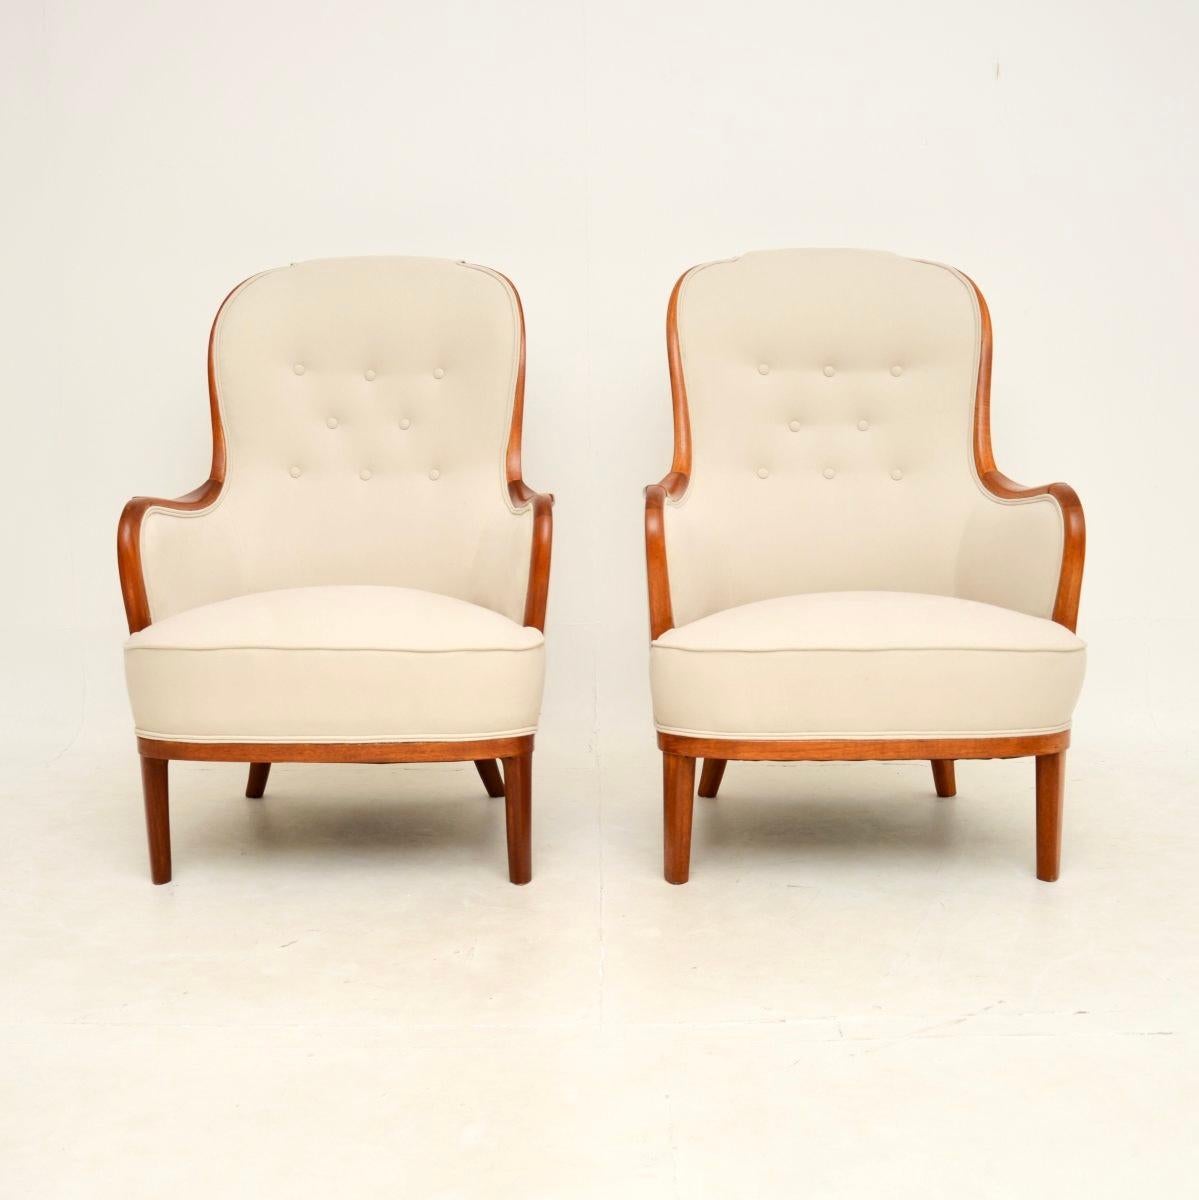 Ein atemberaubendes und äußerst seltenes Paar schwedischer Vintage-Sessel von Carl Malmsten. Sie wurden kürzlich aus Schweden importiert und stammen aus den 1940-50er Jahren.

Dieses frühe Modell ist von hervorragender Qualität mit großzügigen